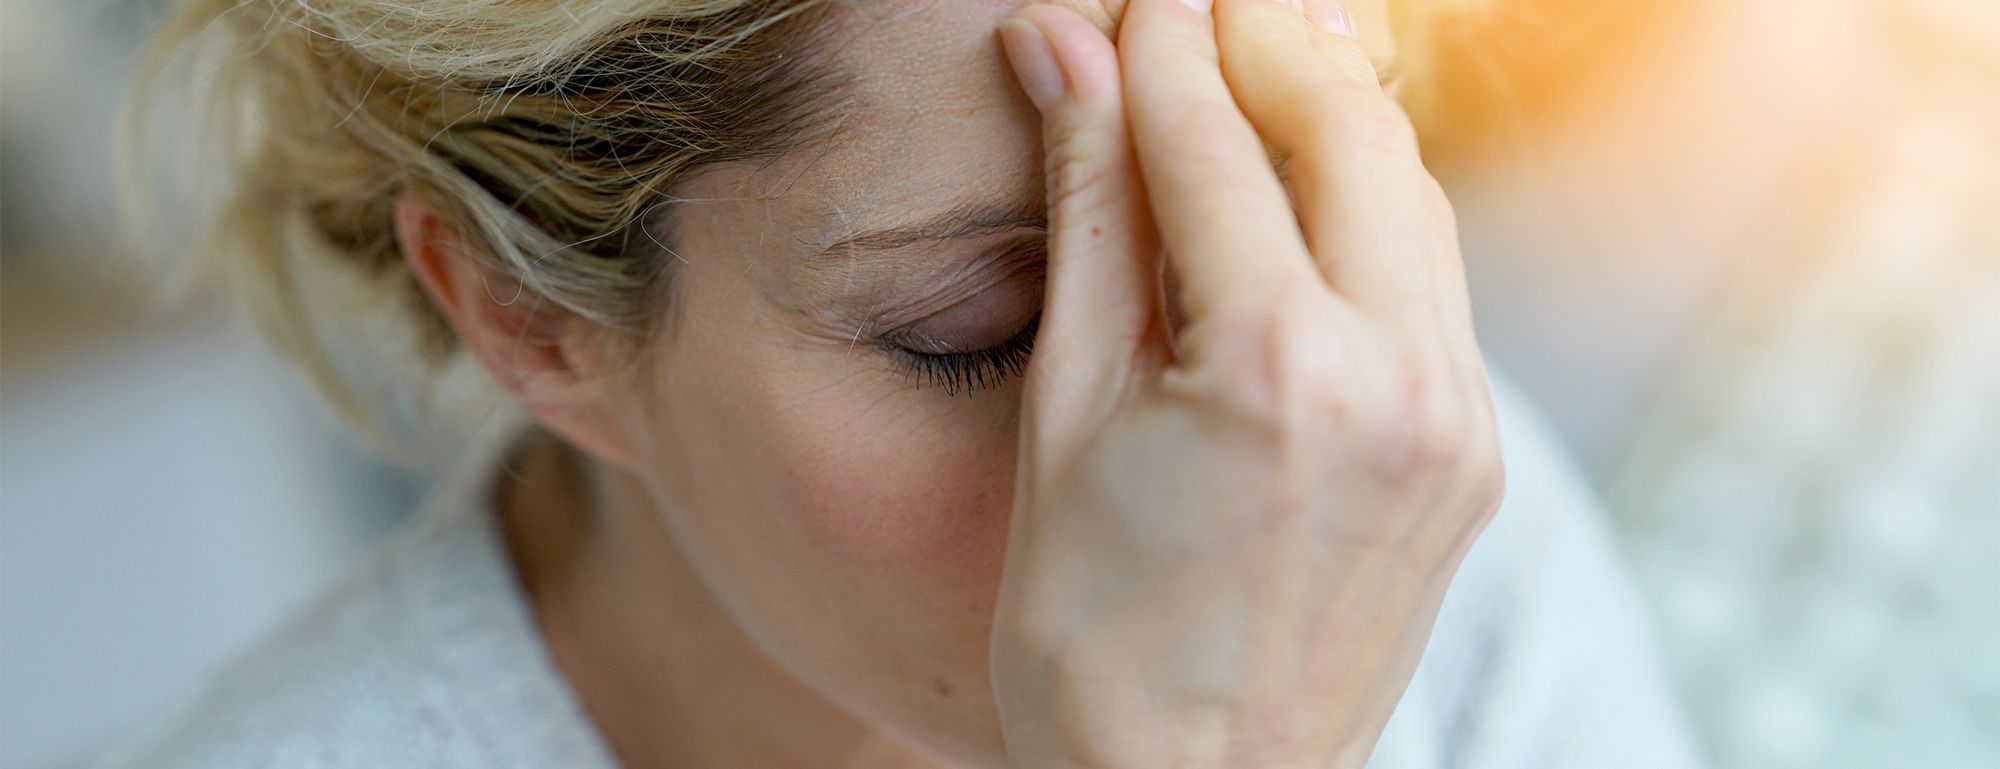 Headache Or Migraine Symptoms?